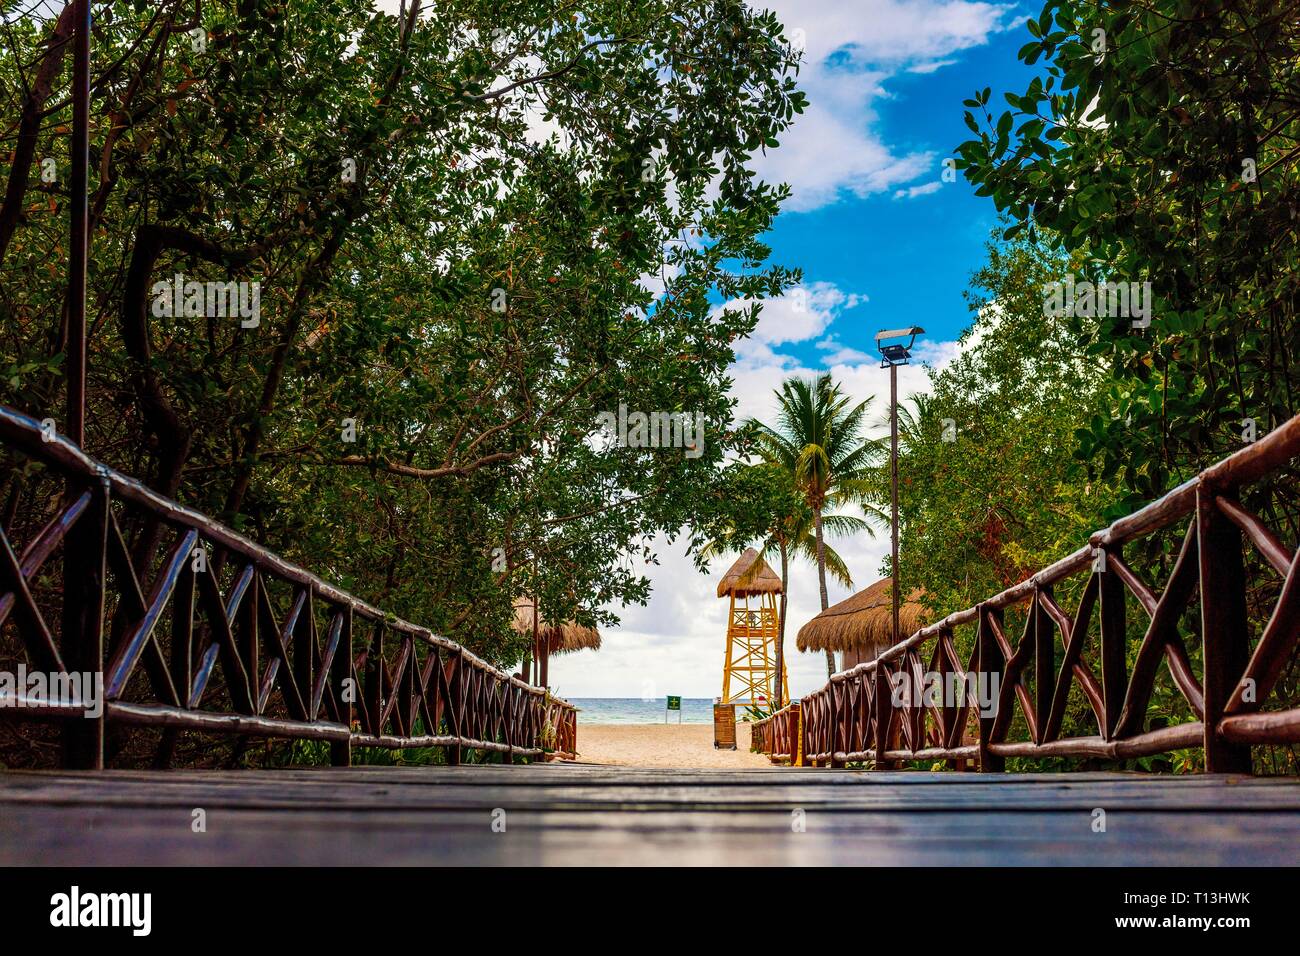 Pont en bois rustique marche à l'ombre et la silhouette des arbres et de la jungle Caribbean beach resort de luxe vers le bas sur la Riviera Maya dans les Caraïbes. Banque D'Images